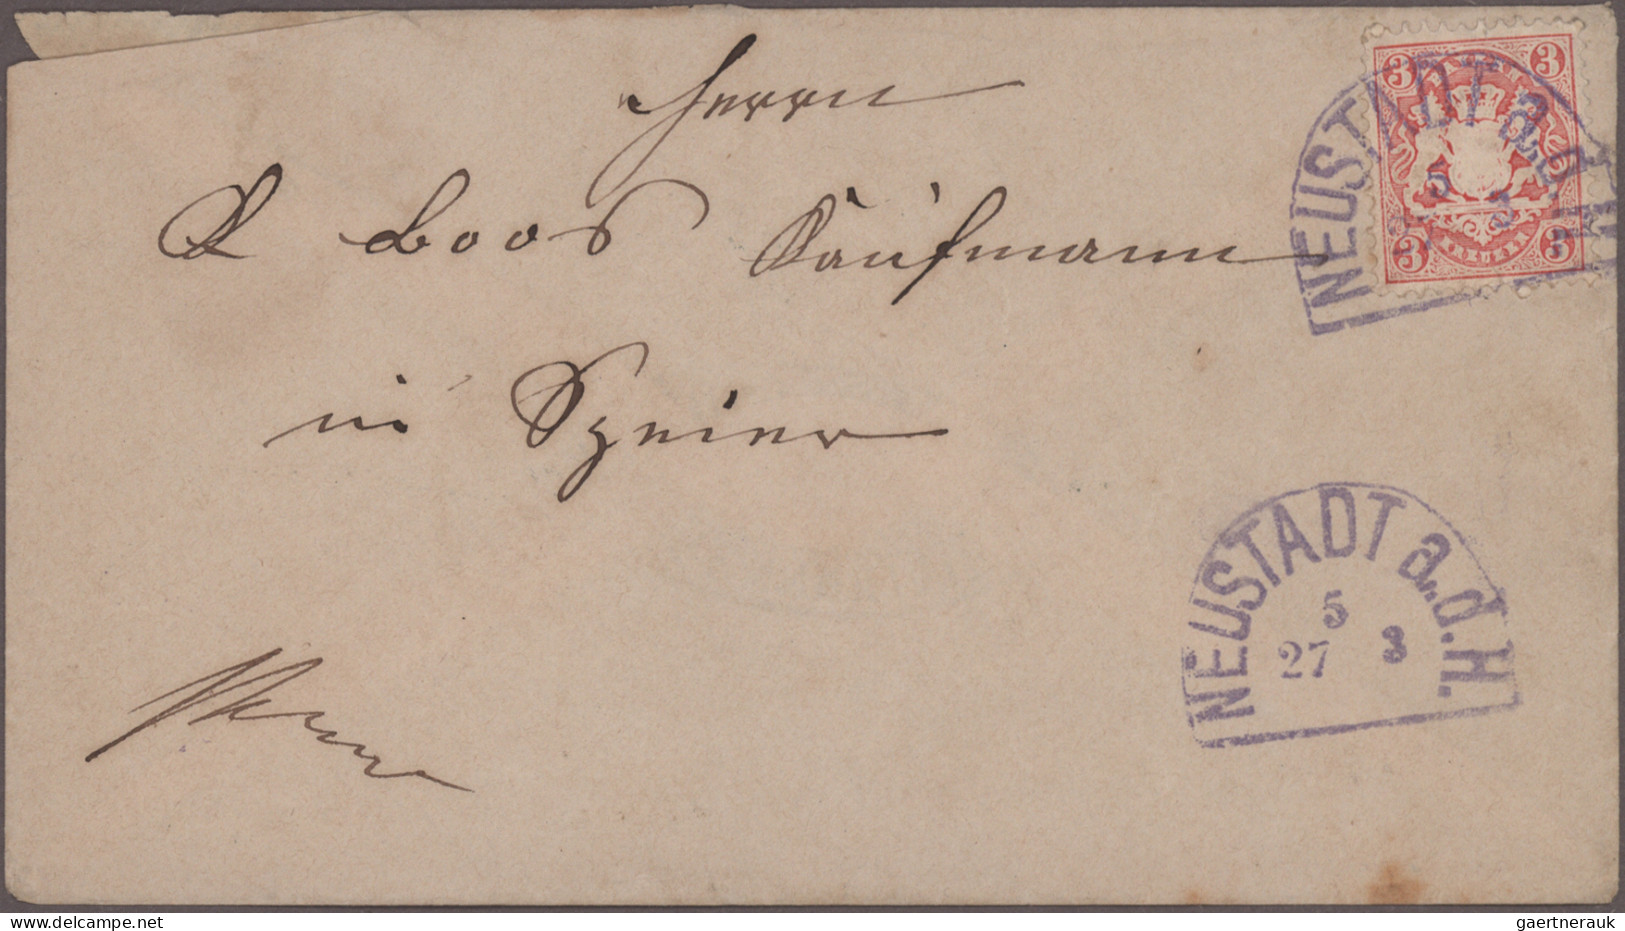 Bayern - Marken und Briefe: 1870/1920 (ca.), Posten mit über 400 Briefen und Kar